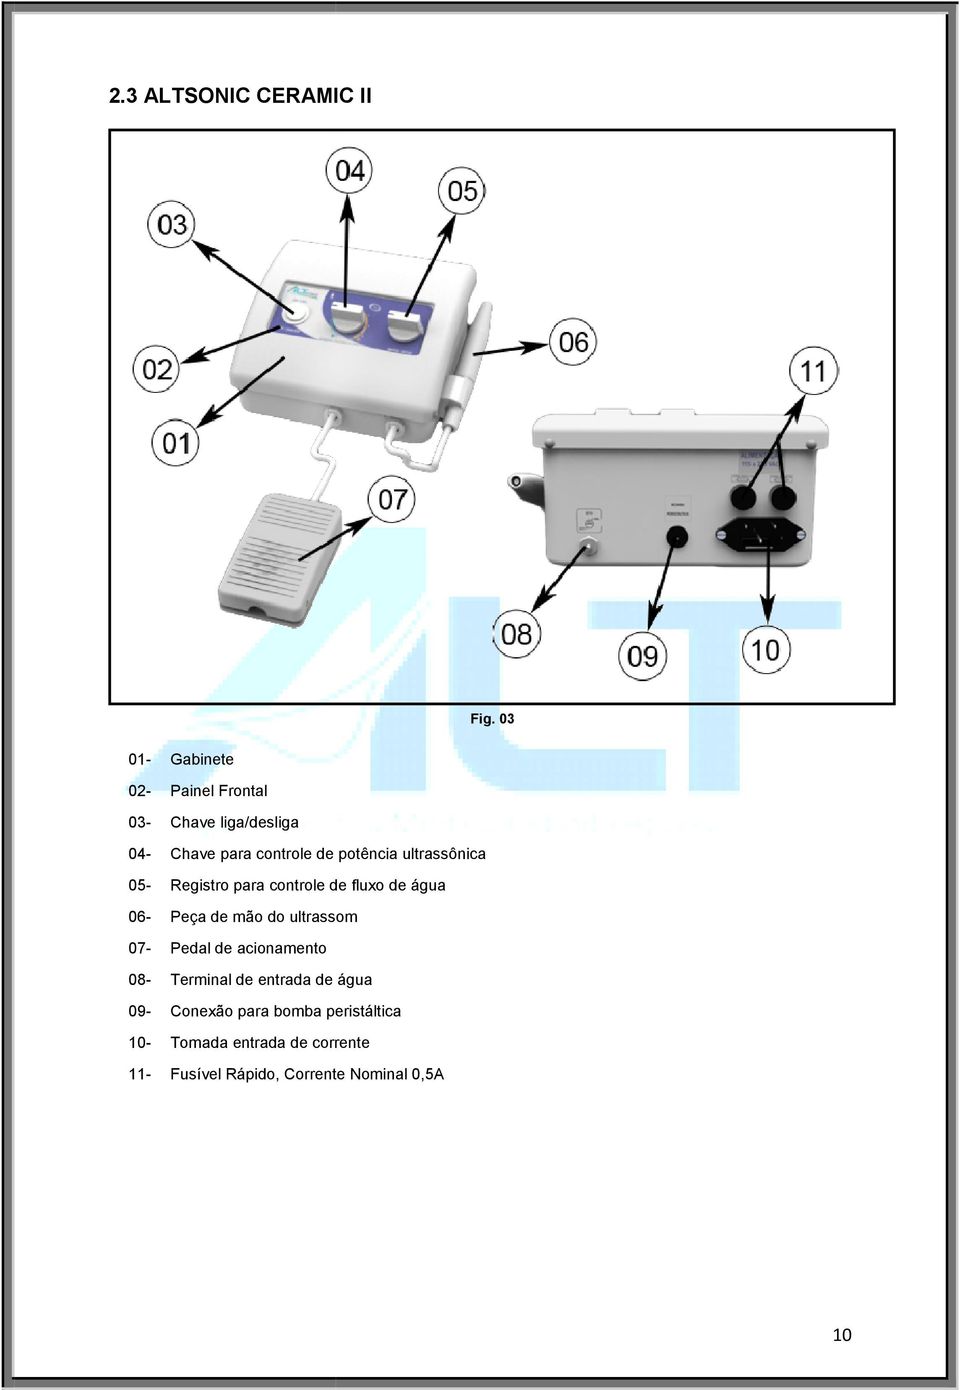 ultrassônica 05- Registro para controle de fluxo de água 06- Peça de mão do ultrassom 07-